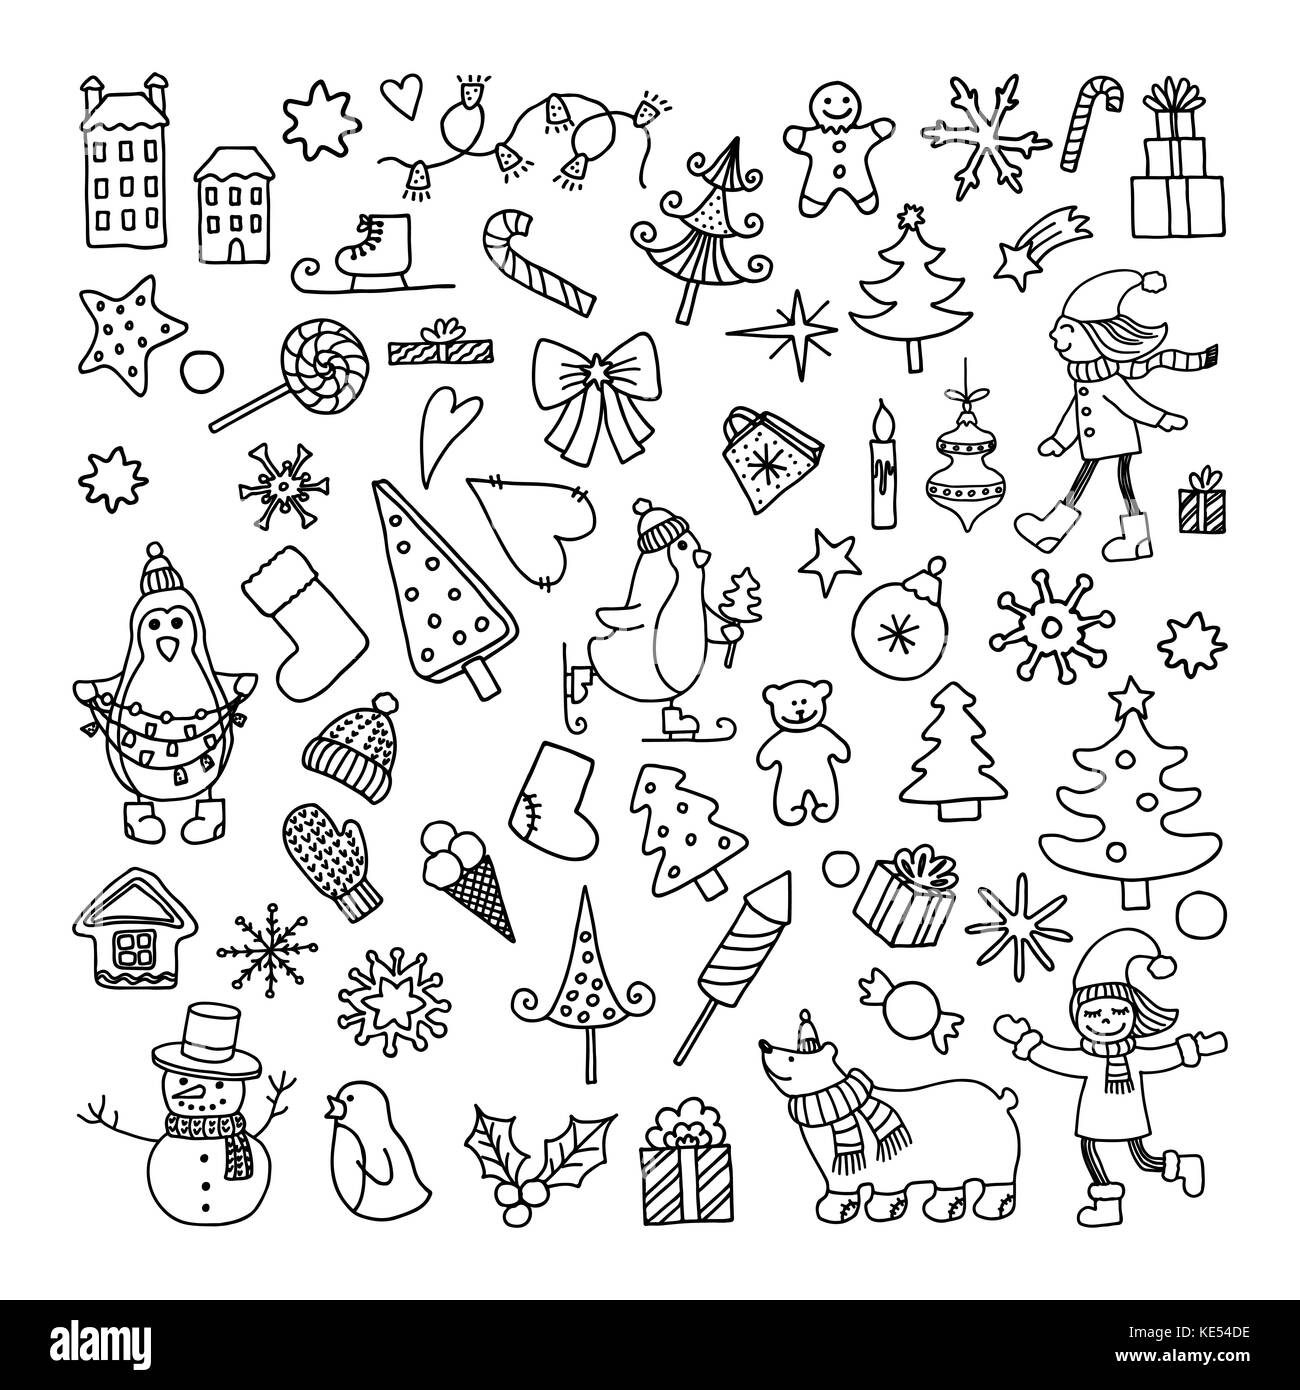 Eingestellt von Doodle cartoon Objekte und Symbole, die auf ein neues Jahr Thema Stock Vektor